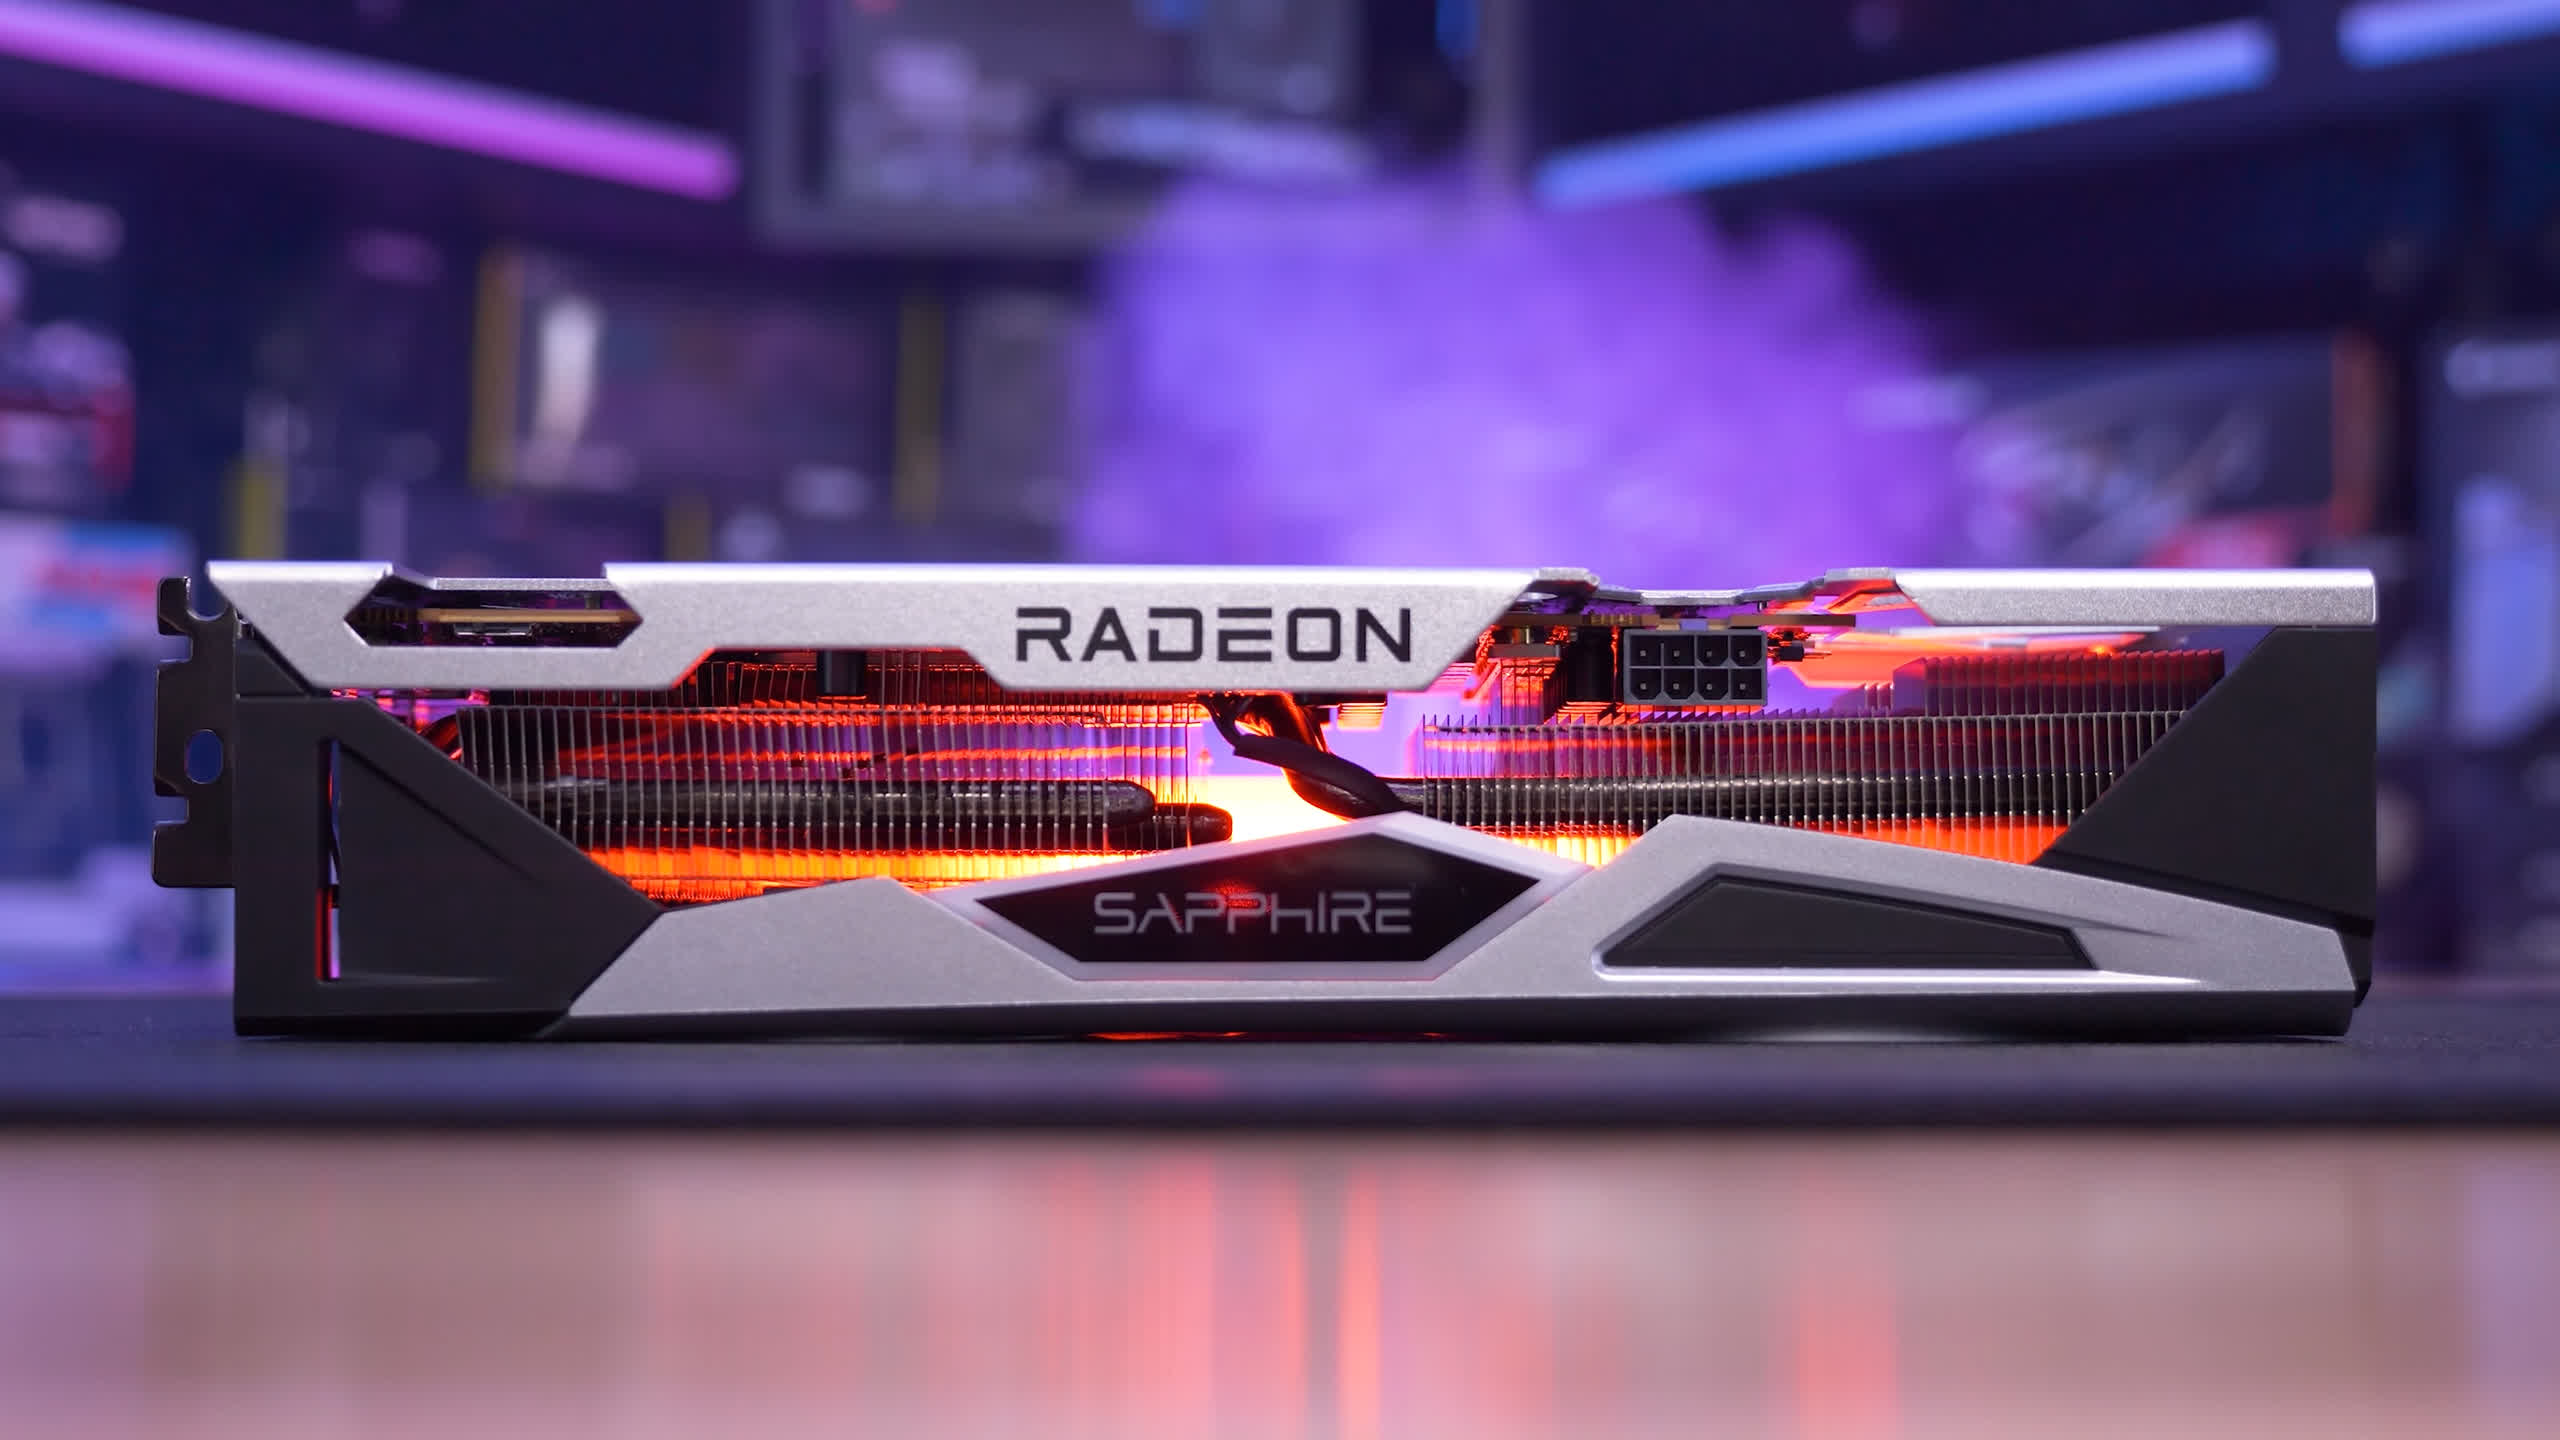 AMD Radeon RX 6650 XT Review | TechSpot